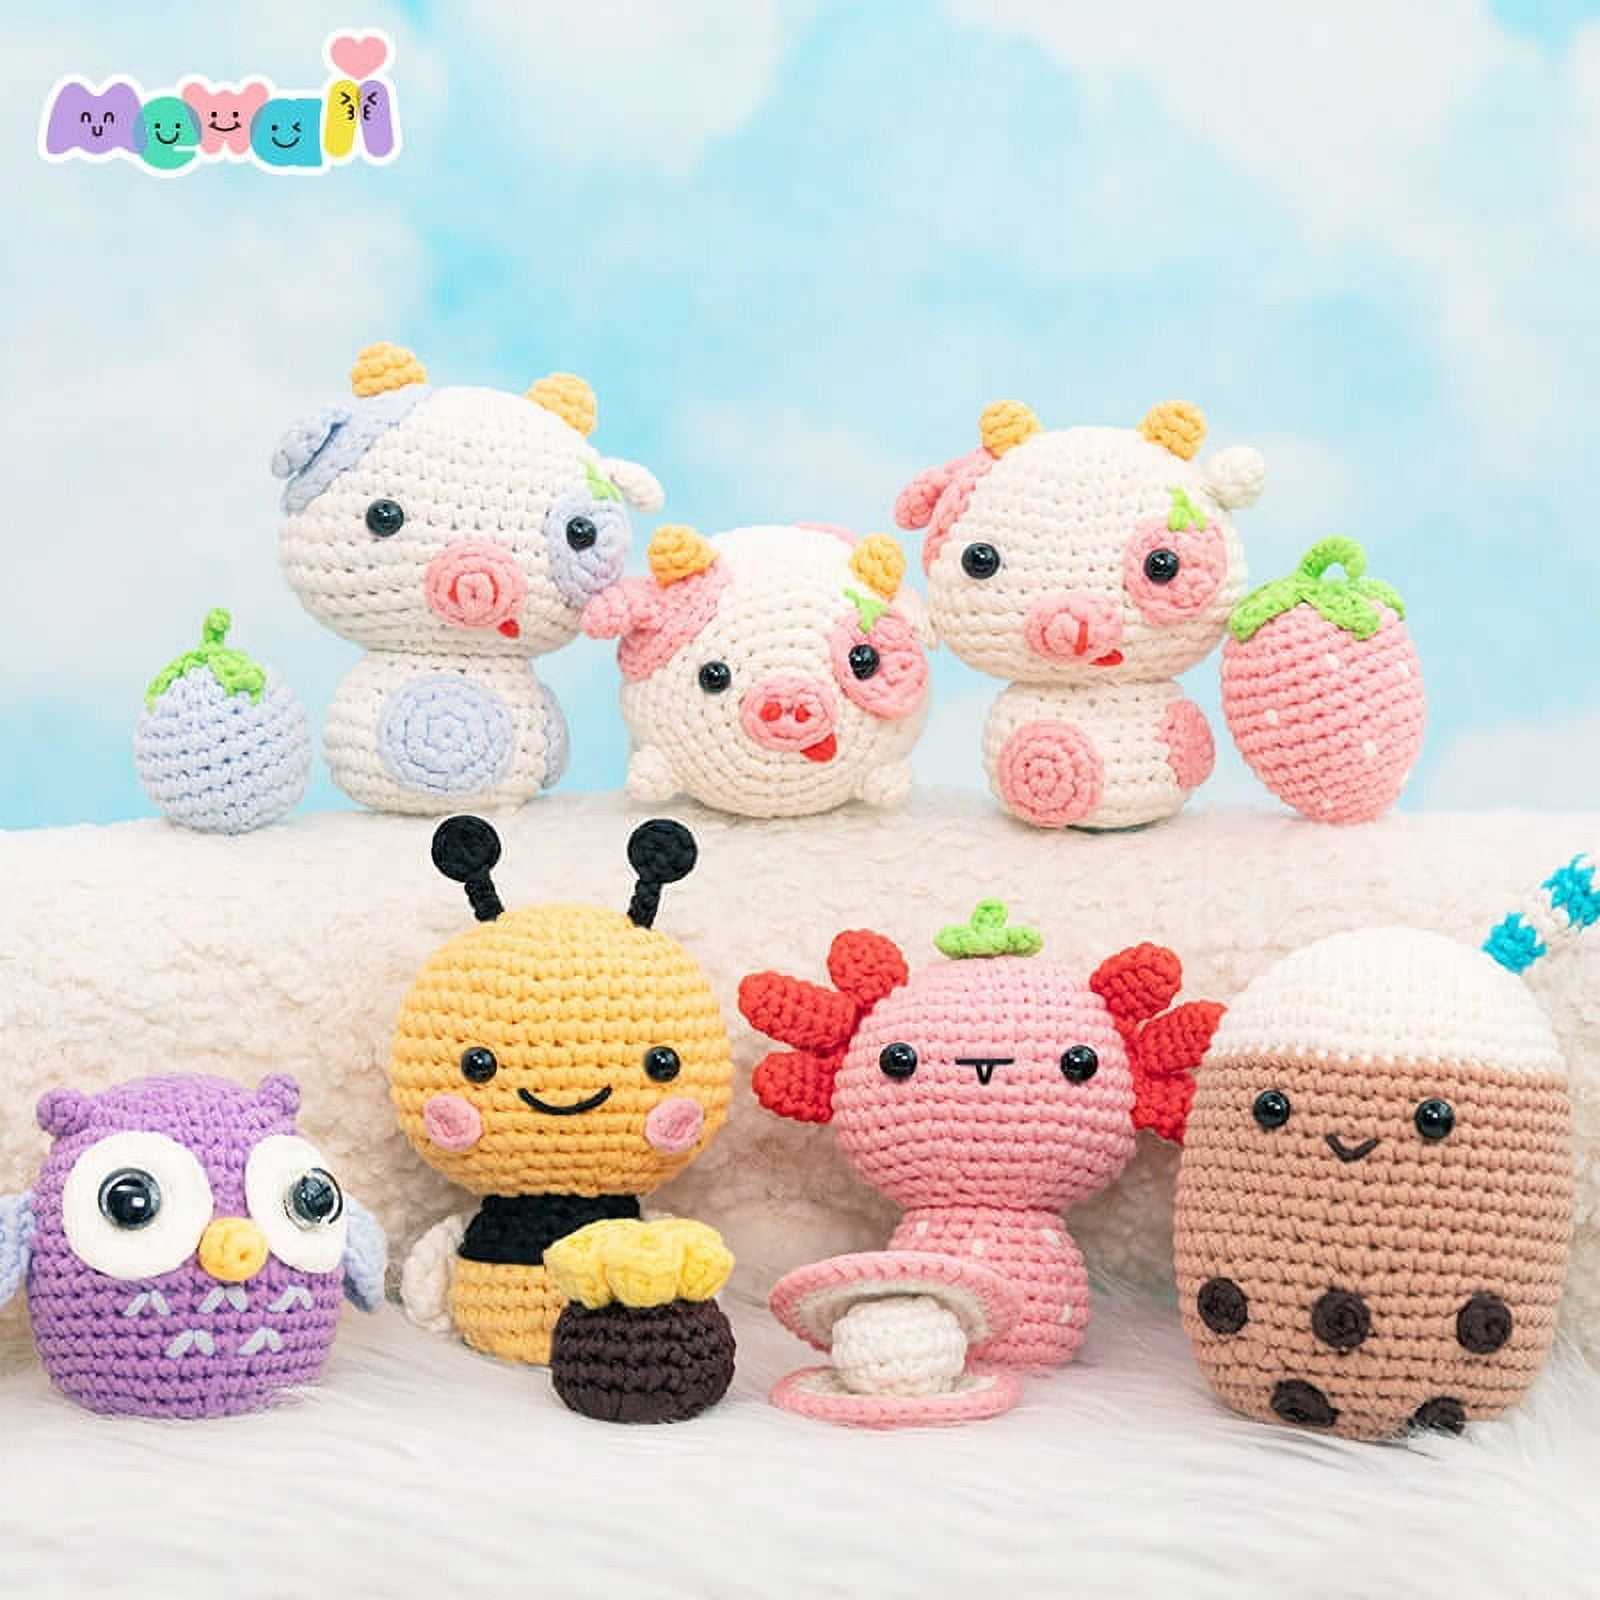 Beginner Crochet Kit For Kids, Mushroom Crochet Kit, Crochet